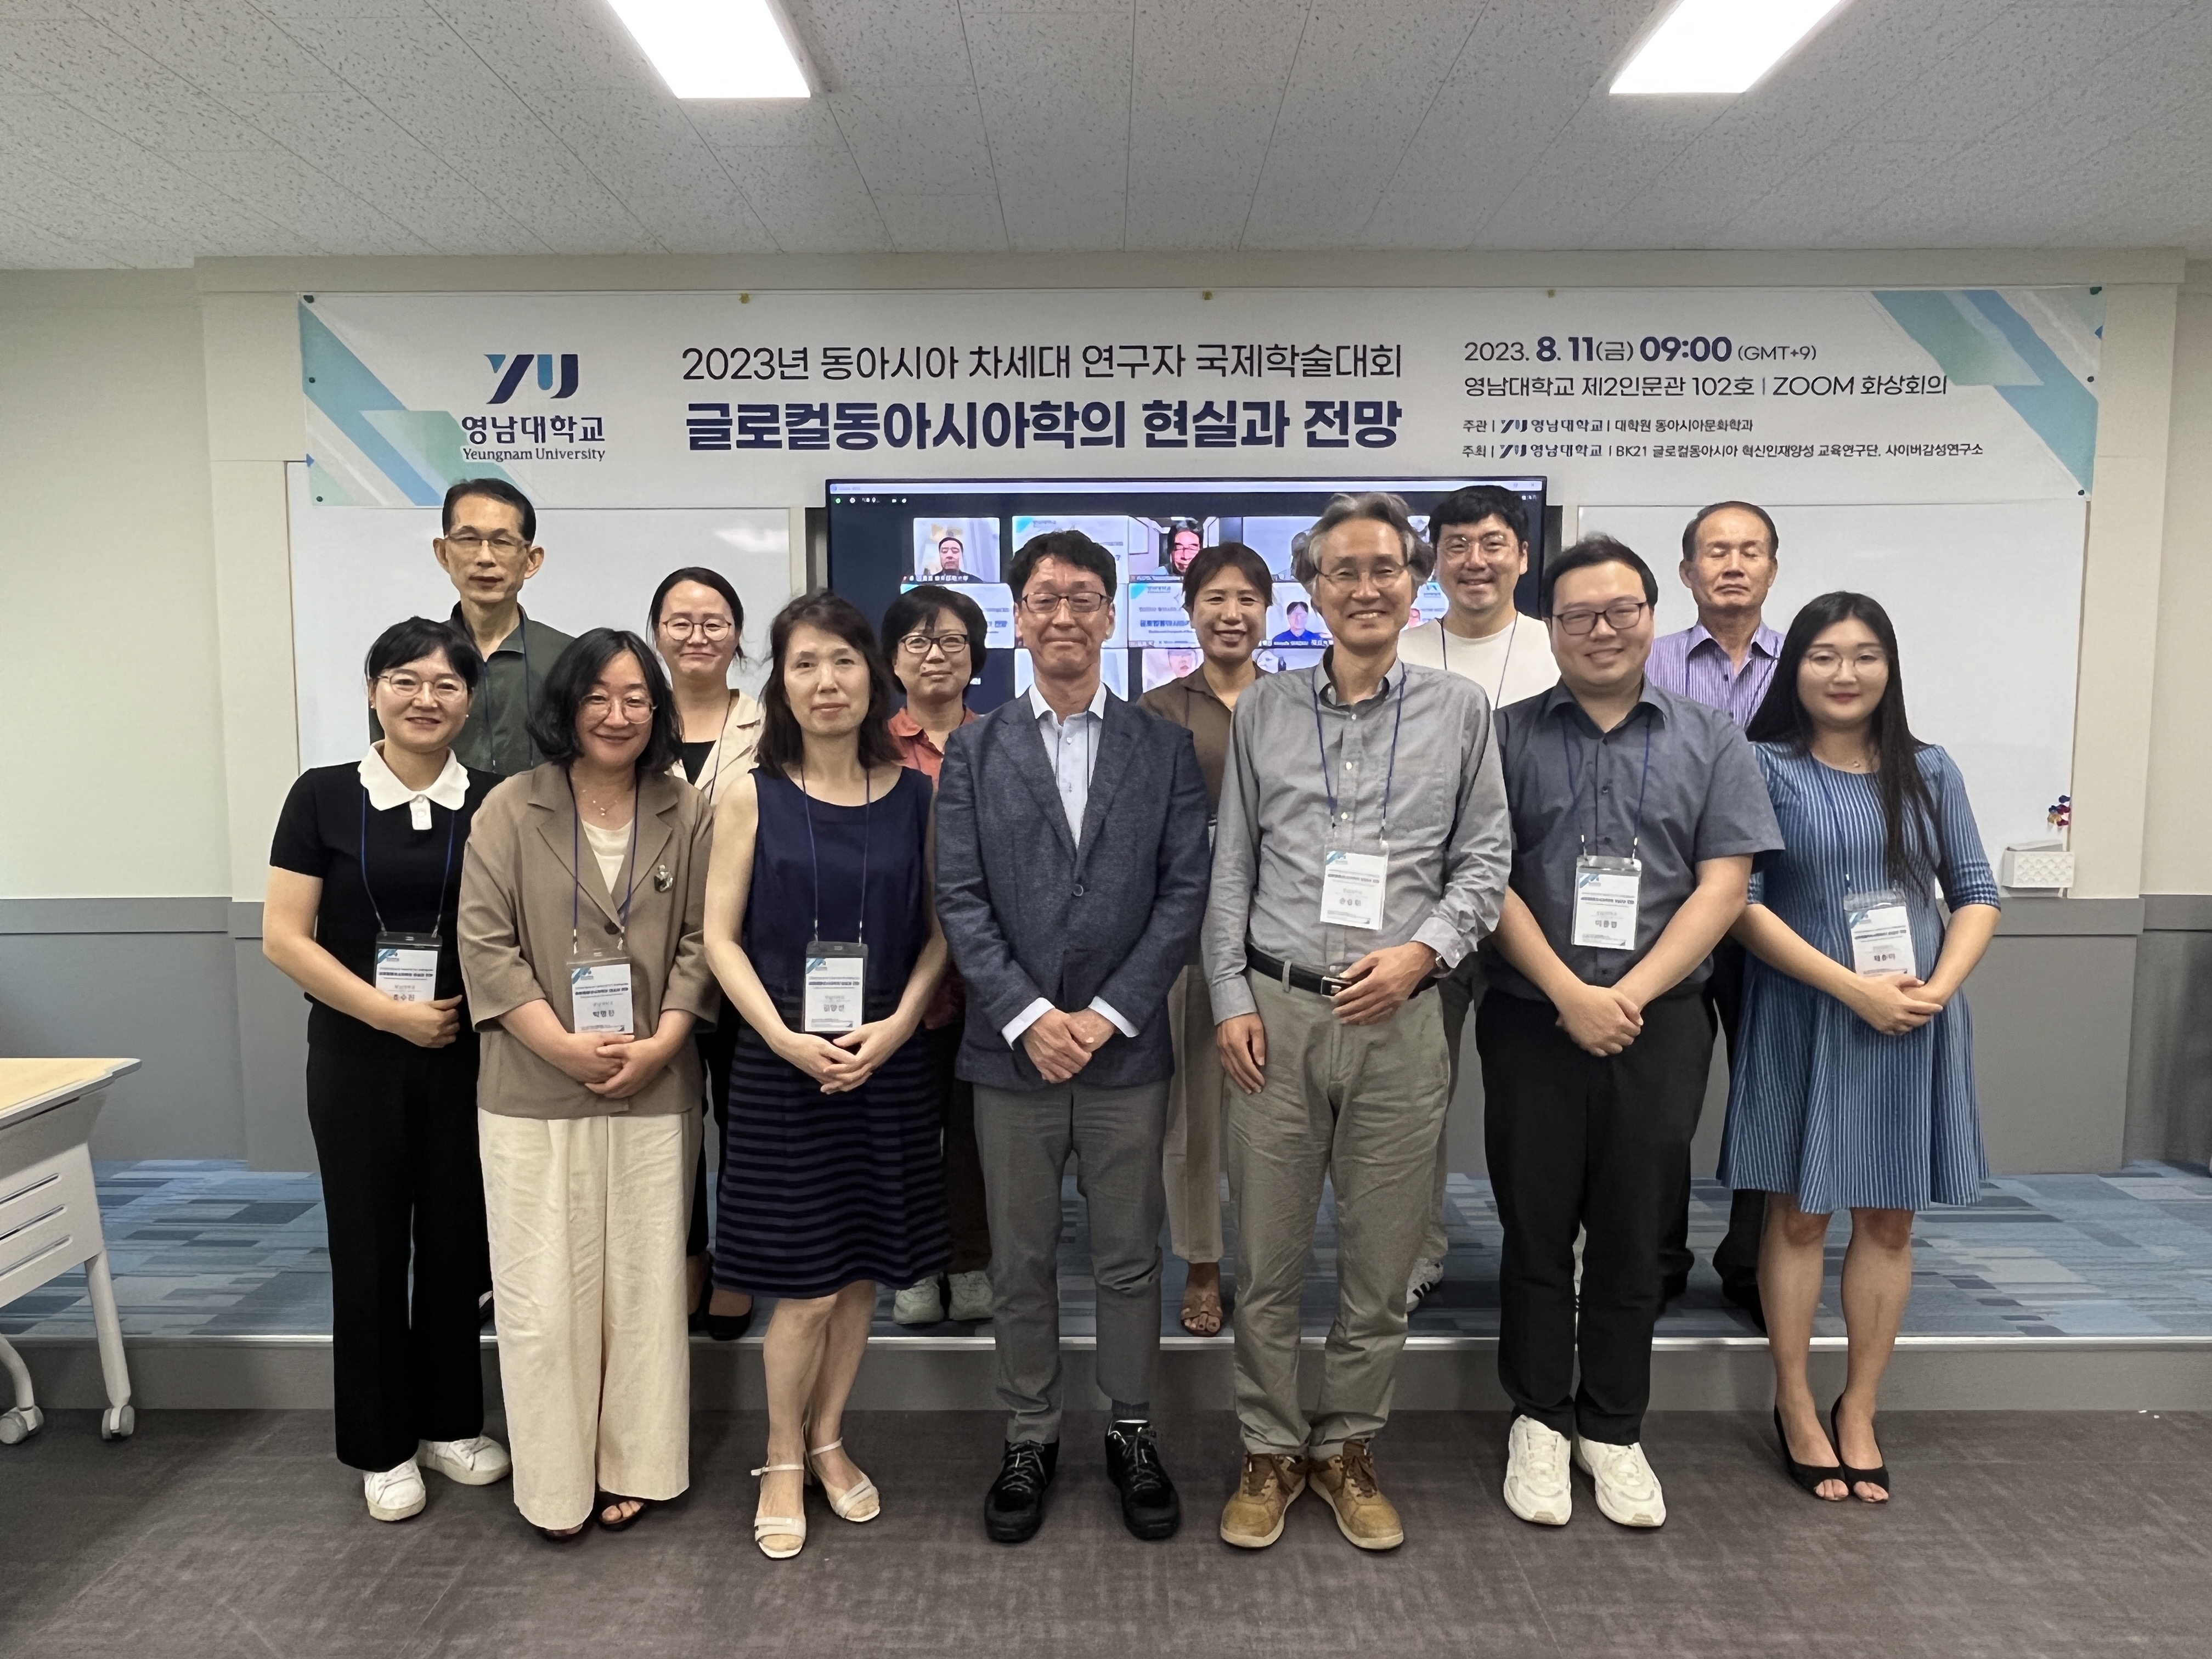 [연구소행사: 학술행사] 2023 동아시아 차세대 연구자 국제학술대회